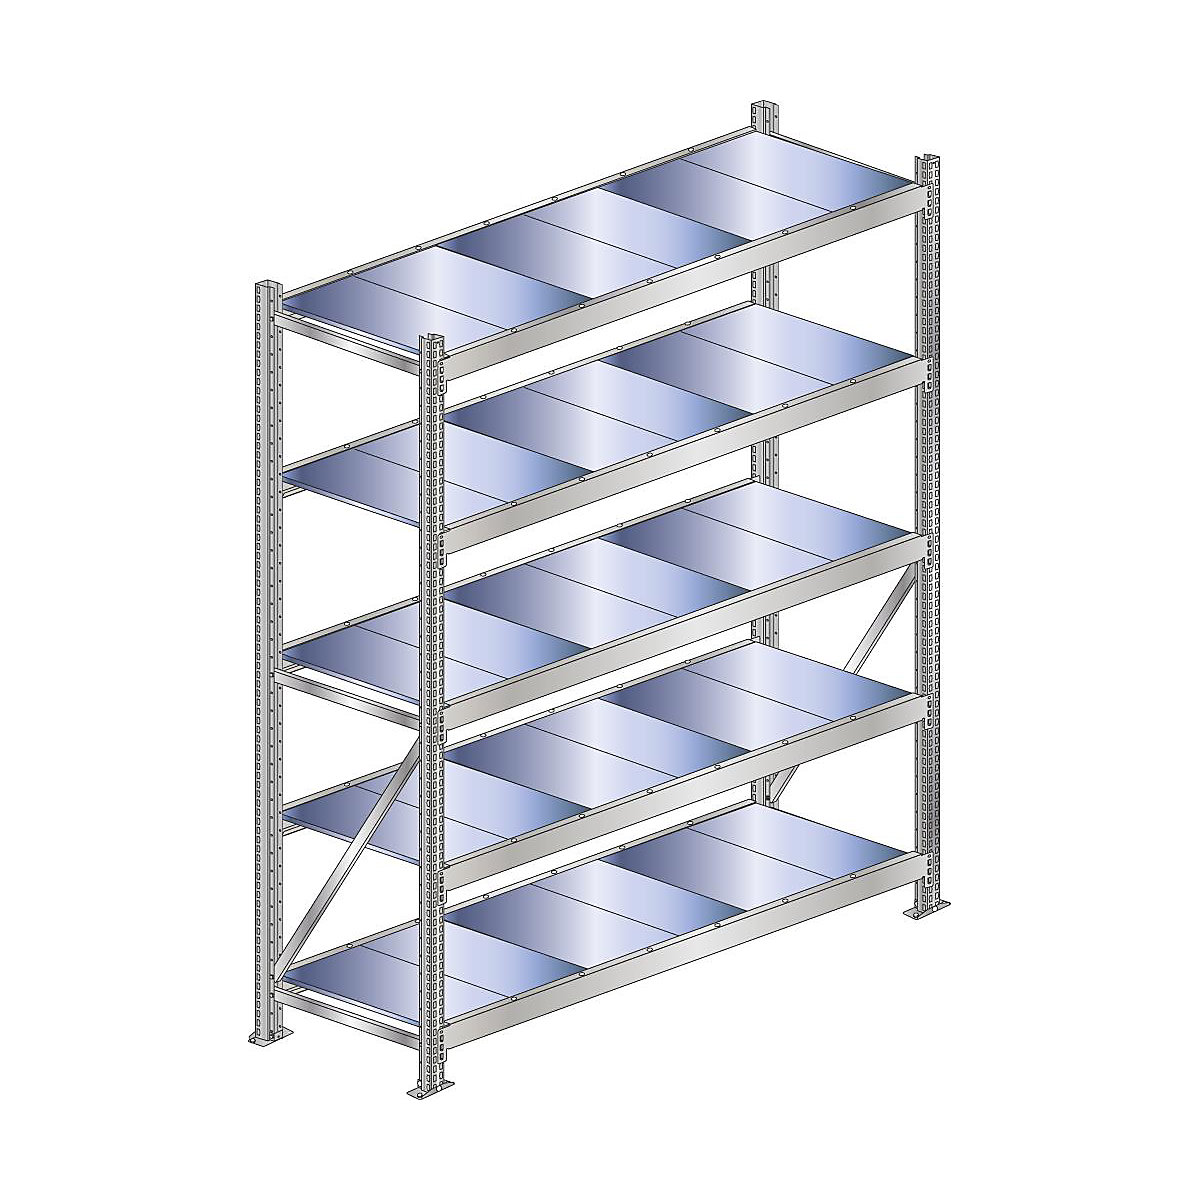 Wide span shelf unit, shelf load 500 kg – SCHULTE, shelf width 1500 mm, standard shelf unit, height 3000 mm, depth 500 mm